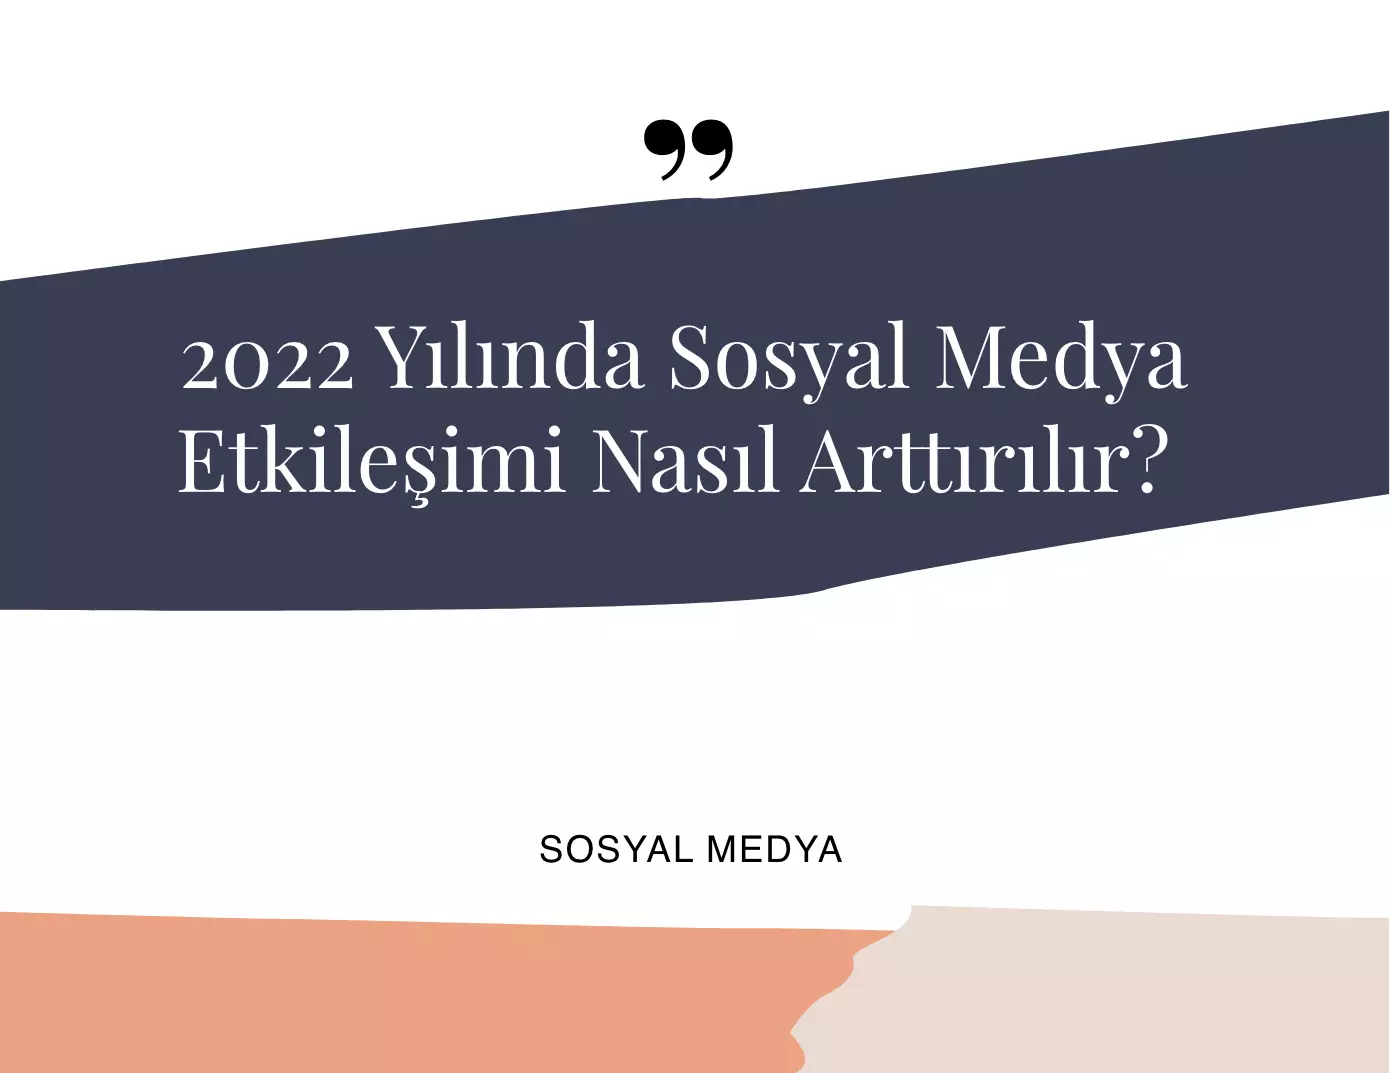 2022 Yılında Sosyal Medya Etkileşimi Arttırma